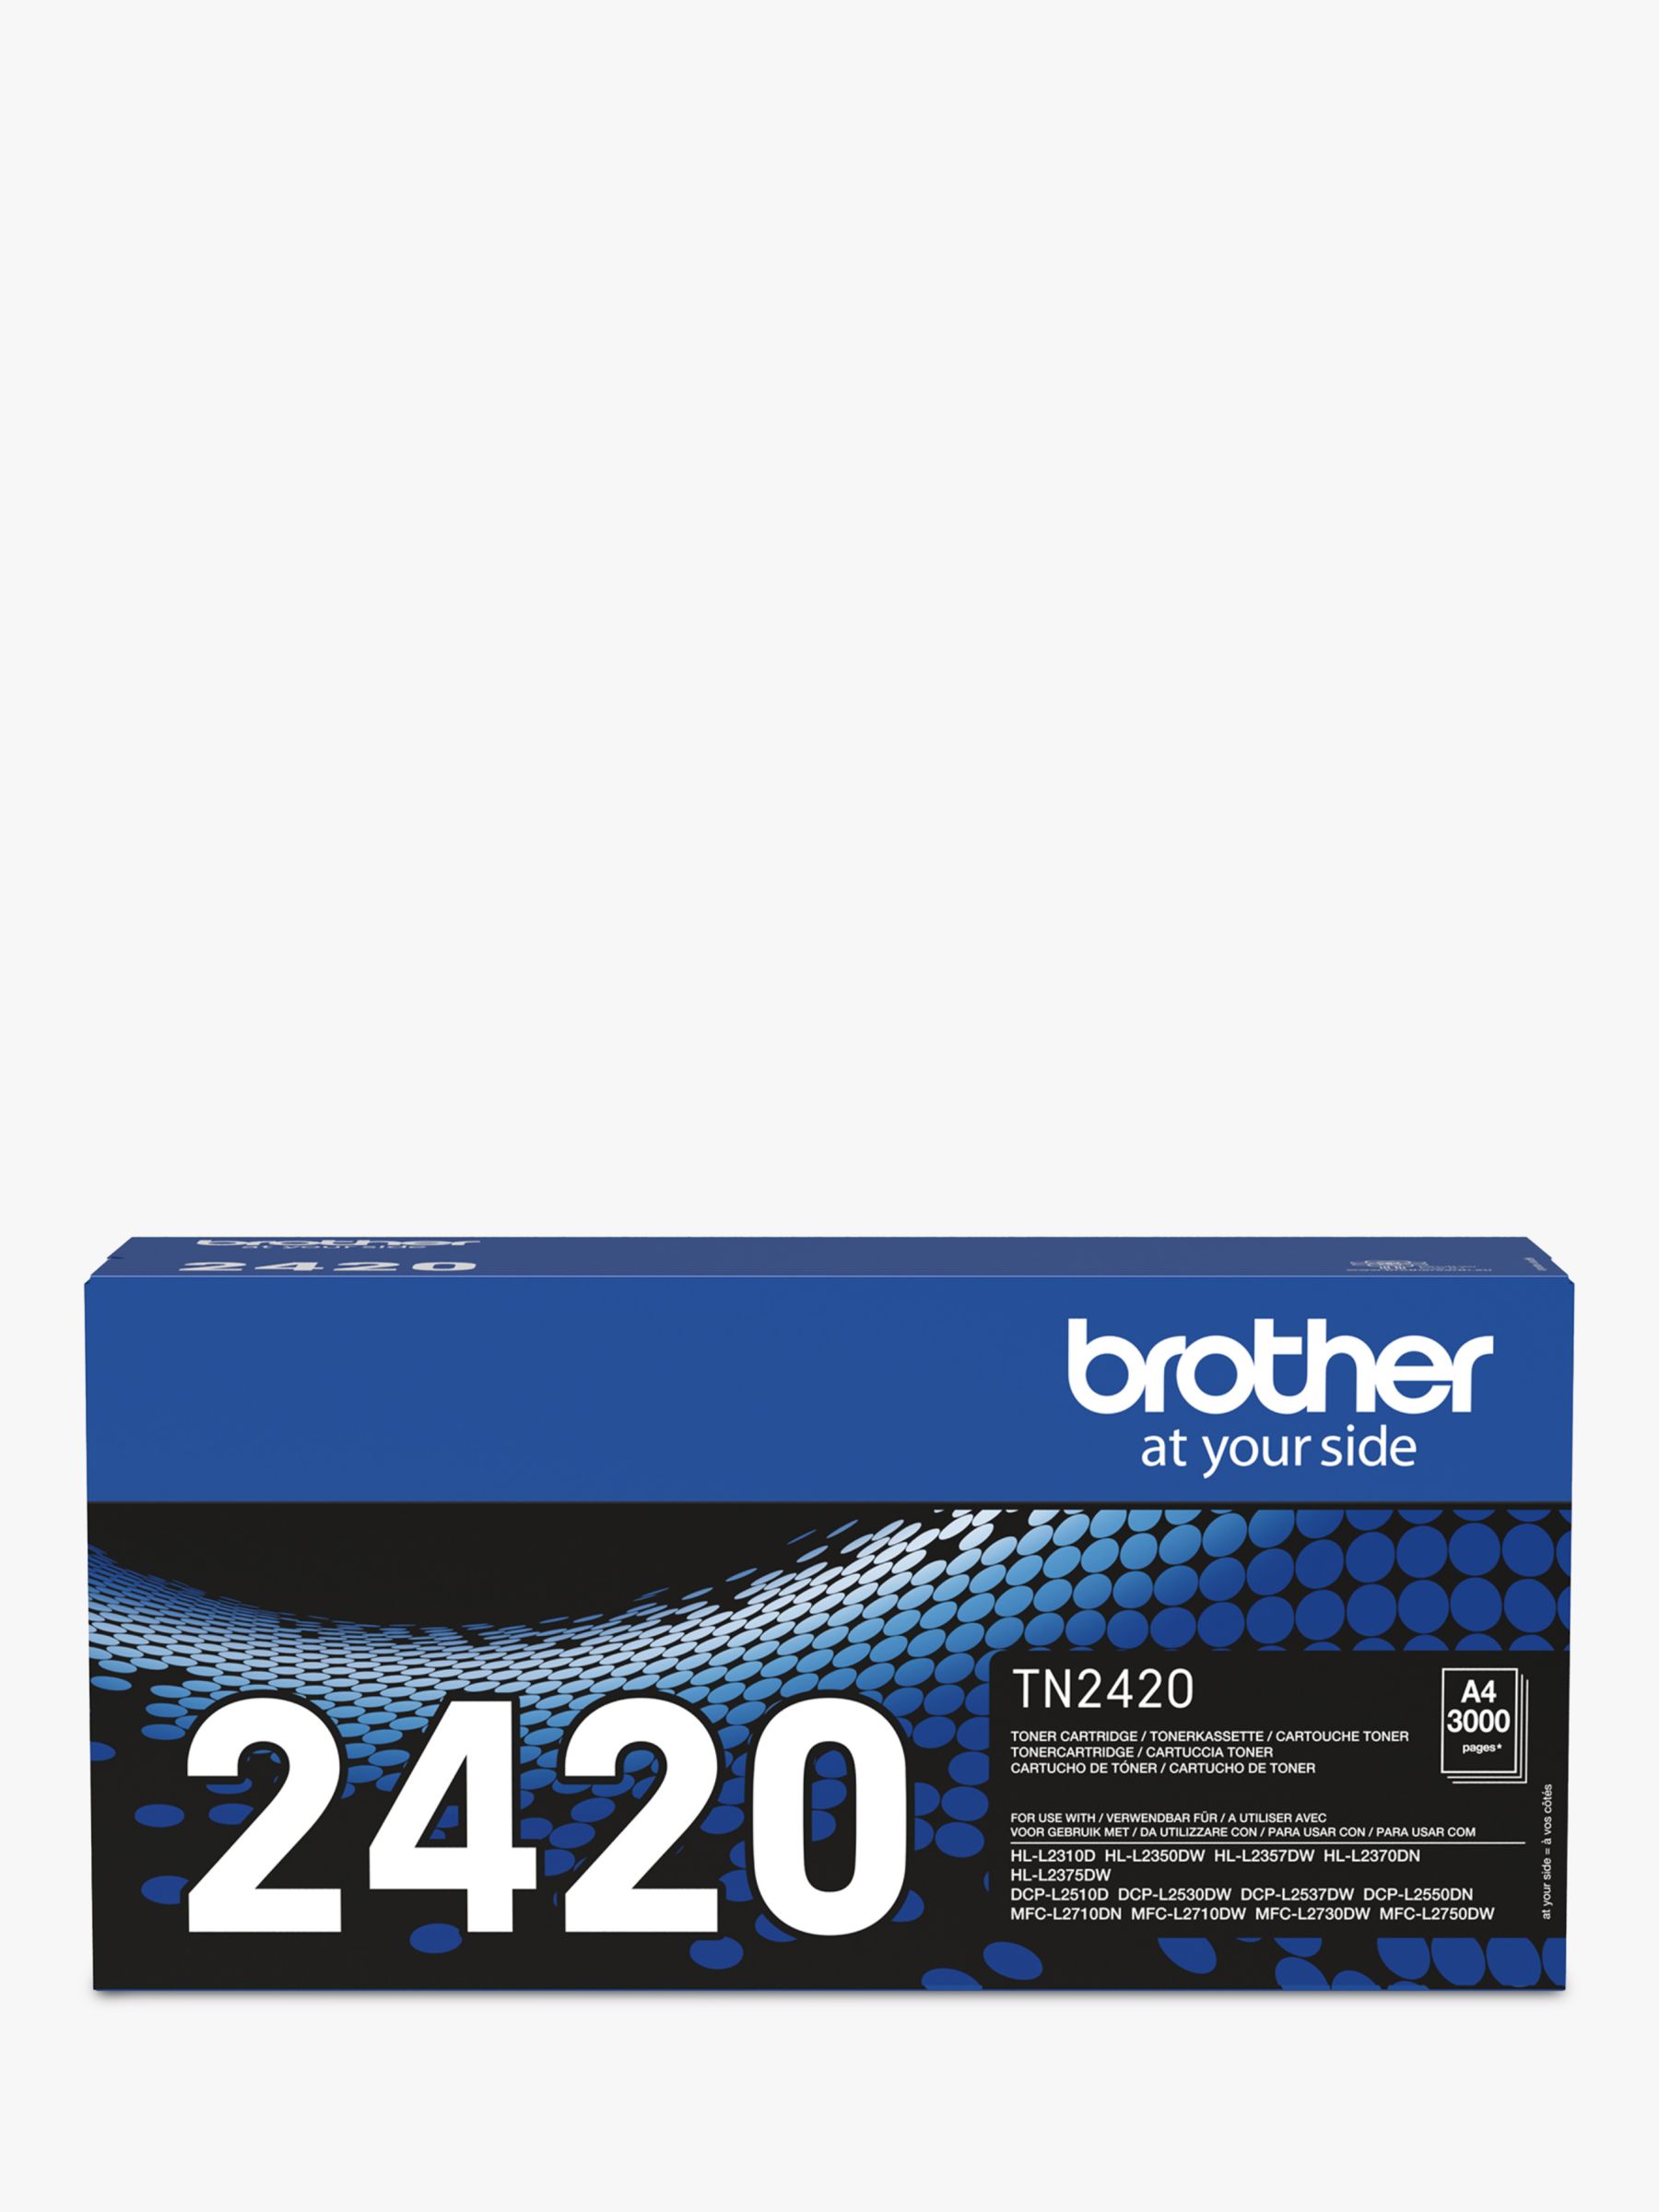 TN2420 Toner Cartridge Compatible for Brother TN-2420 Toner for Brother  DCP-L2530DW DCP-L2510D MFC-L2710DW HL-L2350DW HL-L2310D DCP-L2510D  Printers, 2